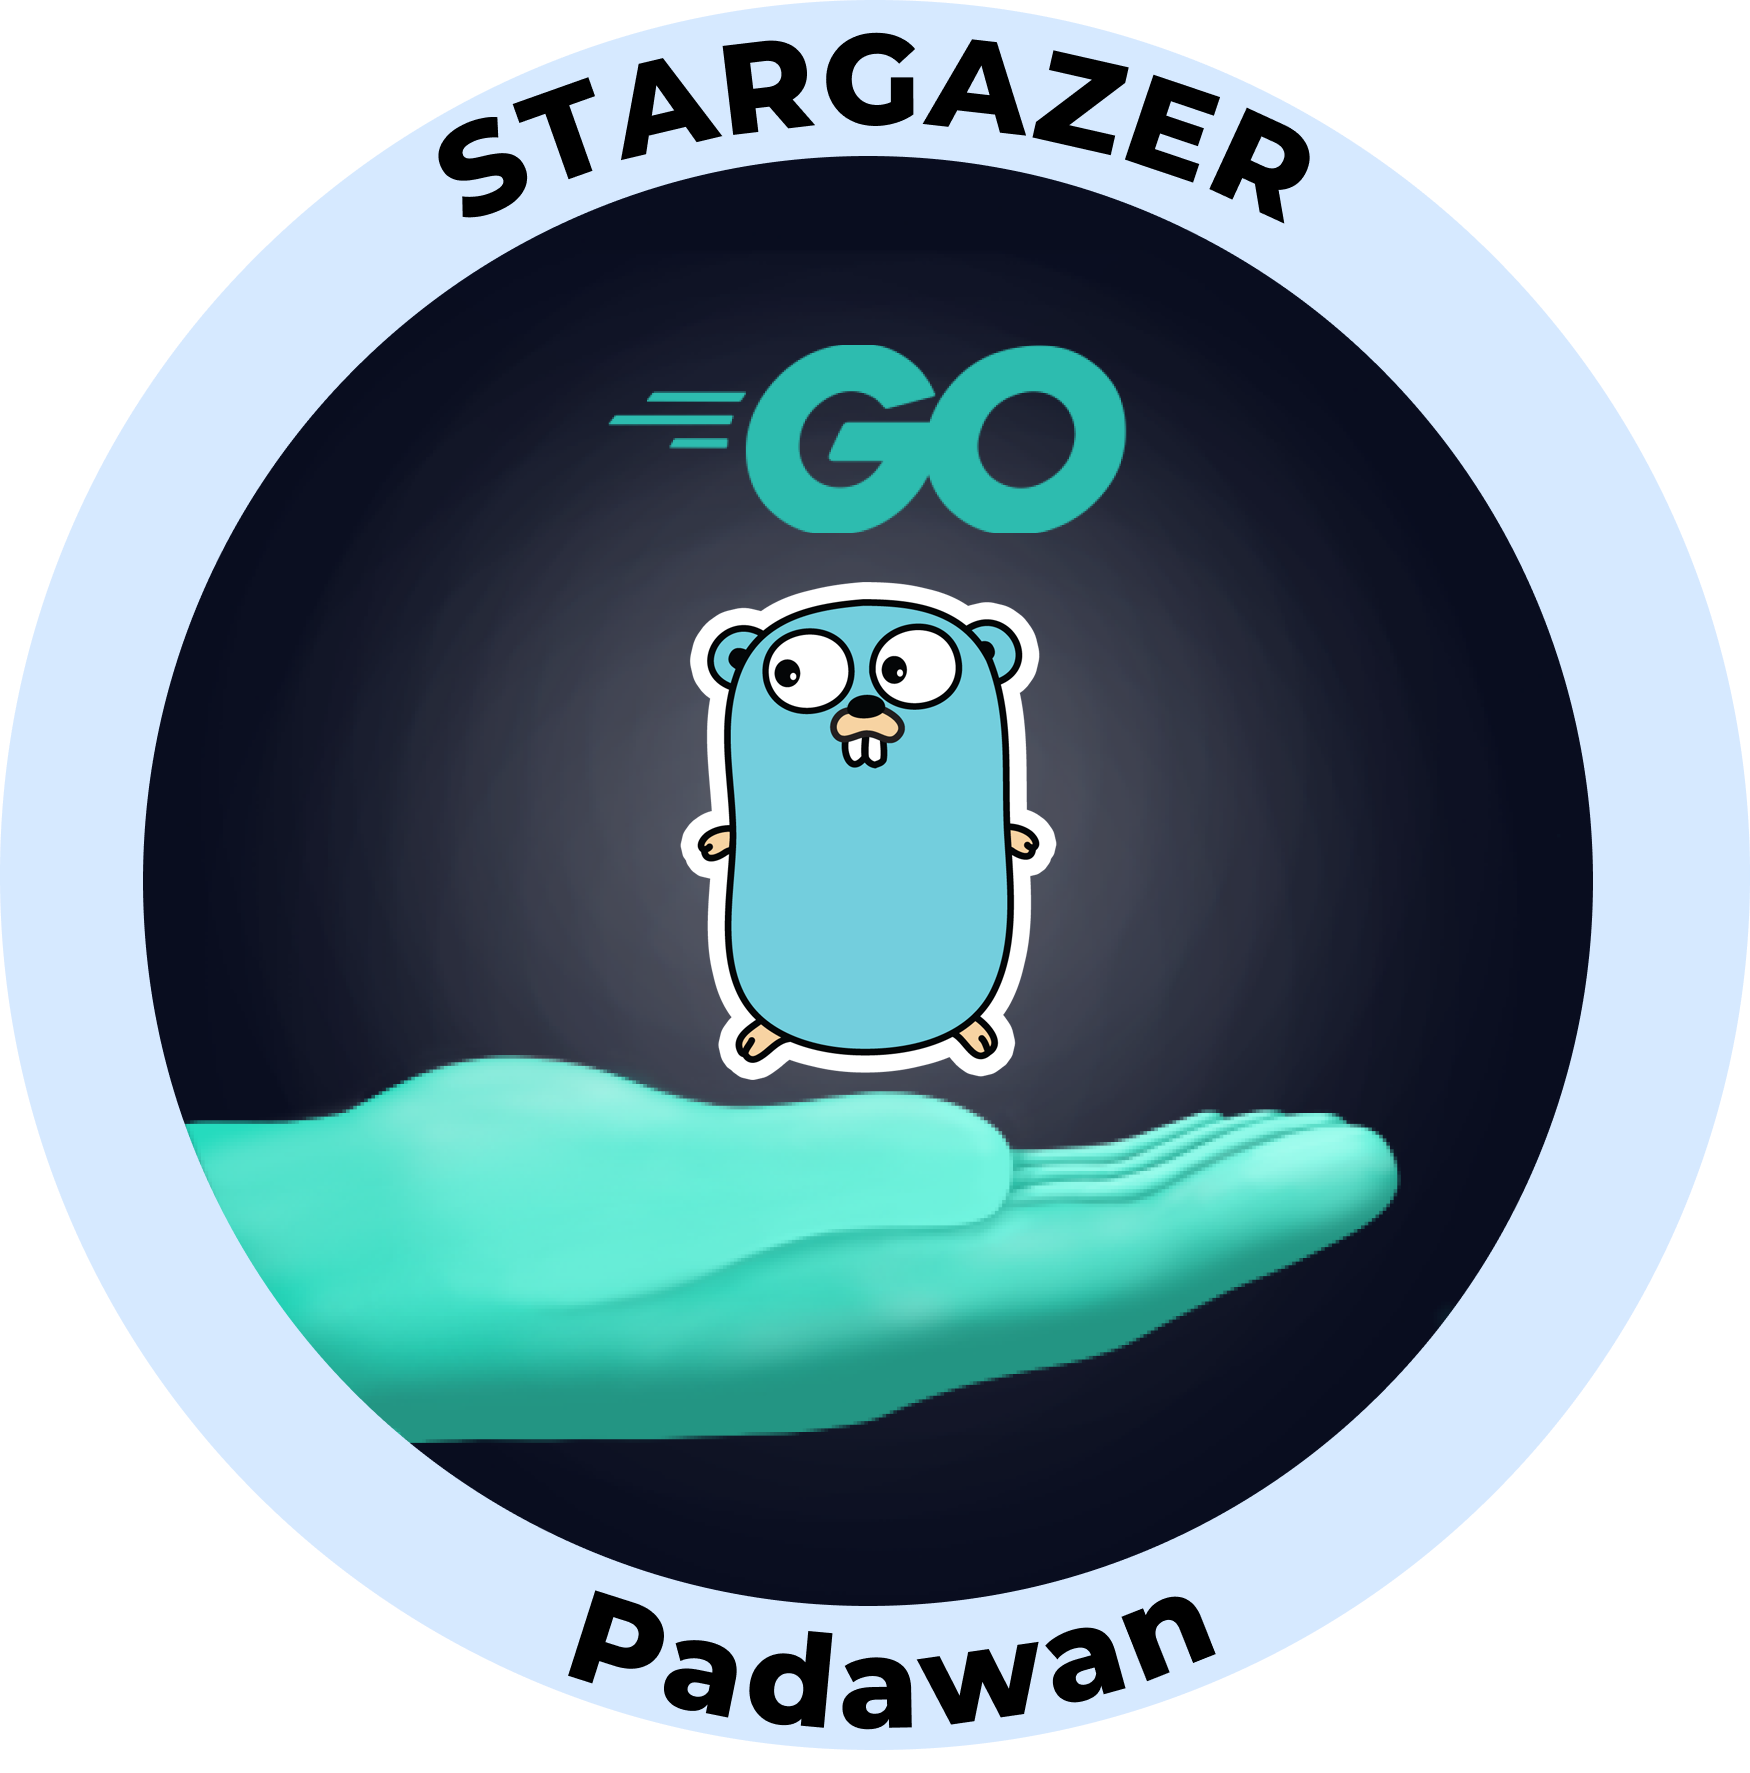 Web3 Badge | Stargazer: Go Padawan